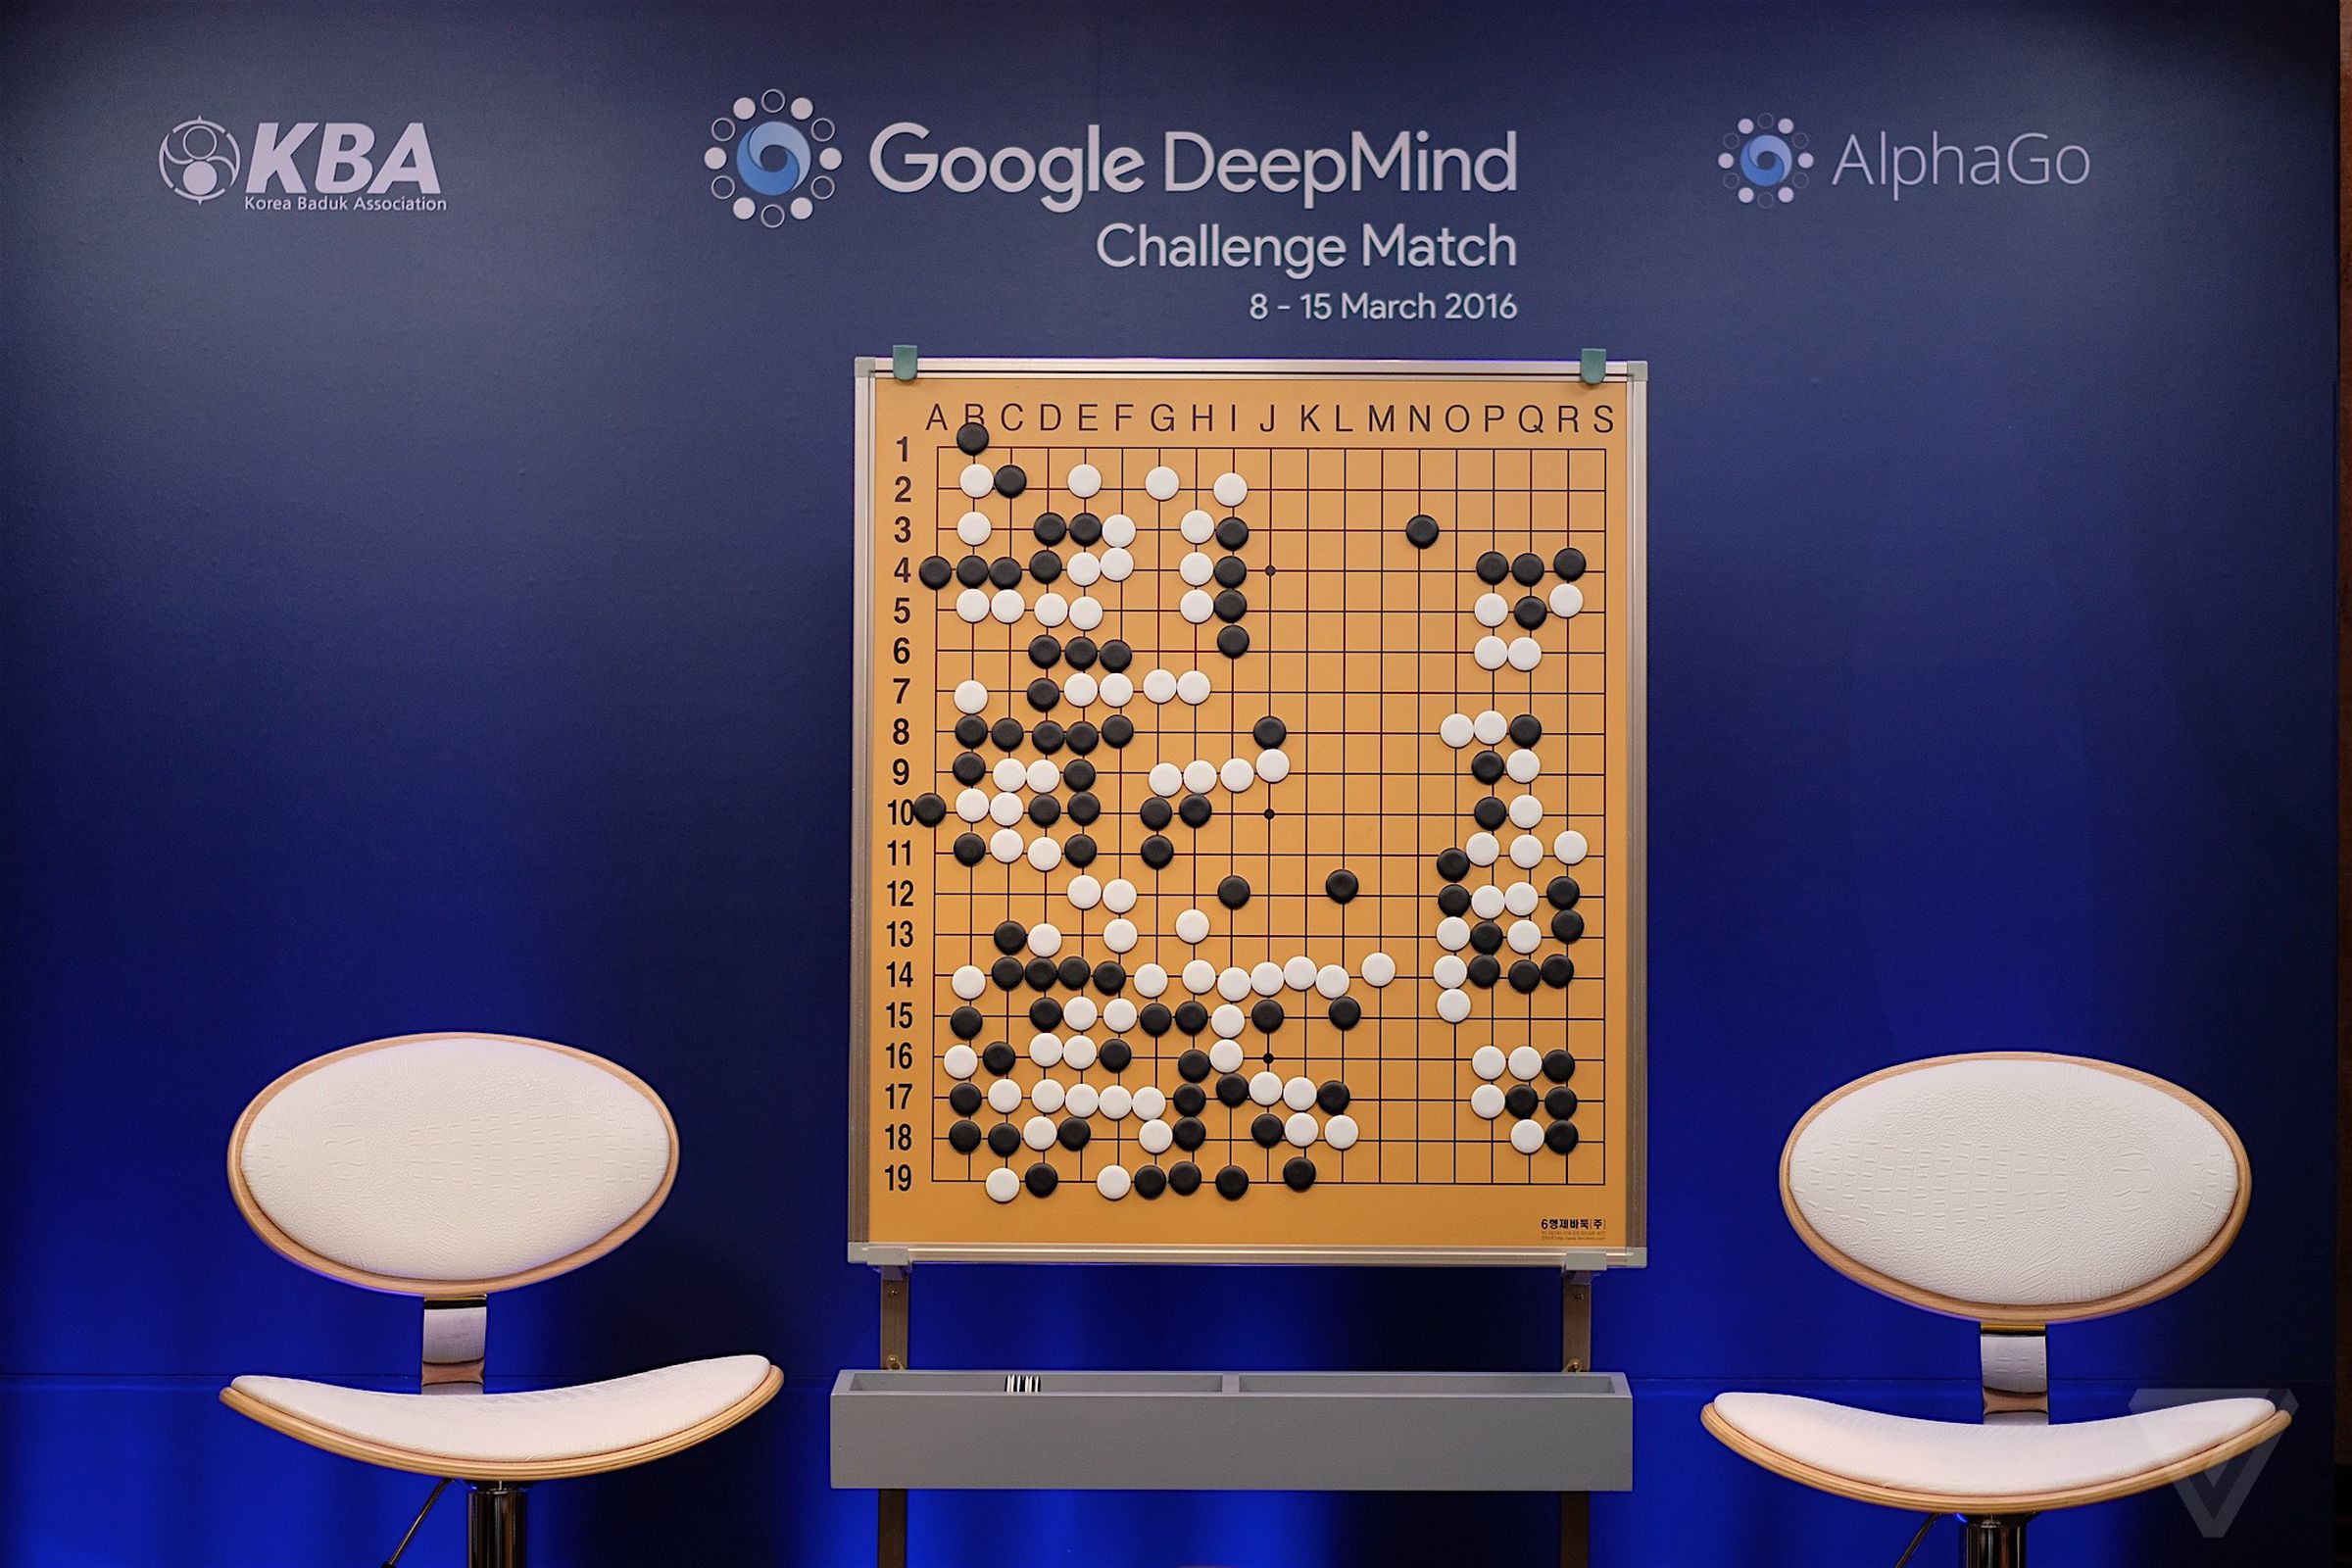 alphago-go-google-deepmind-challenge-match-"Sam Byford"-01